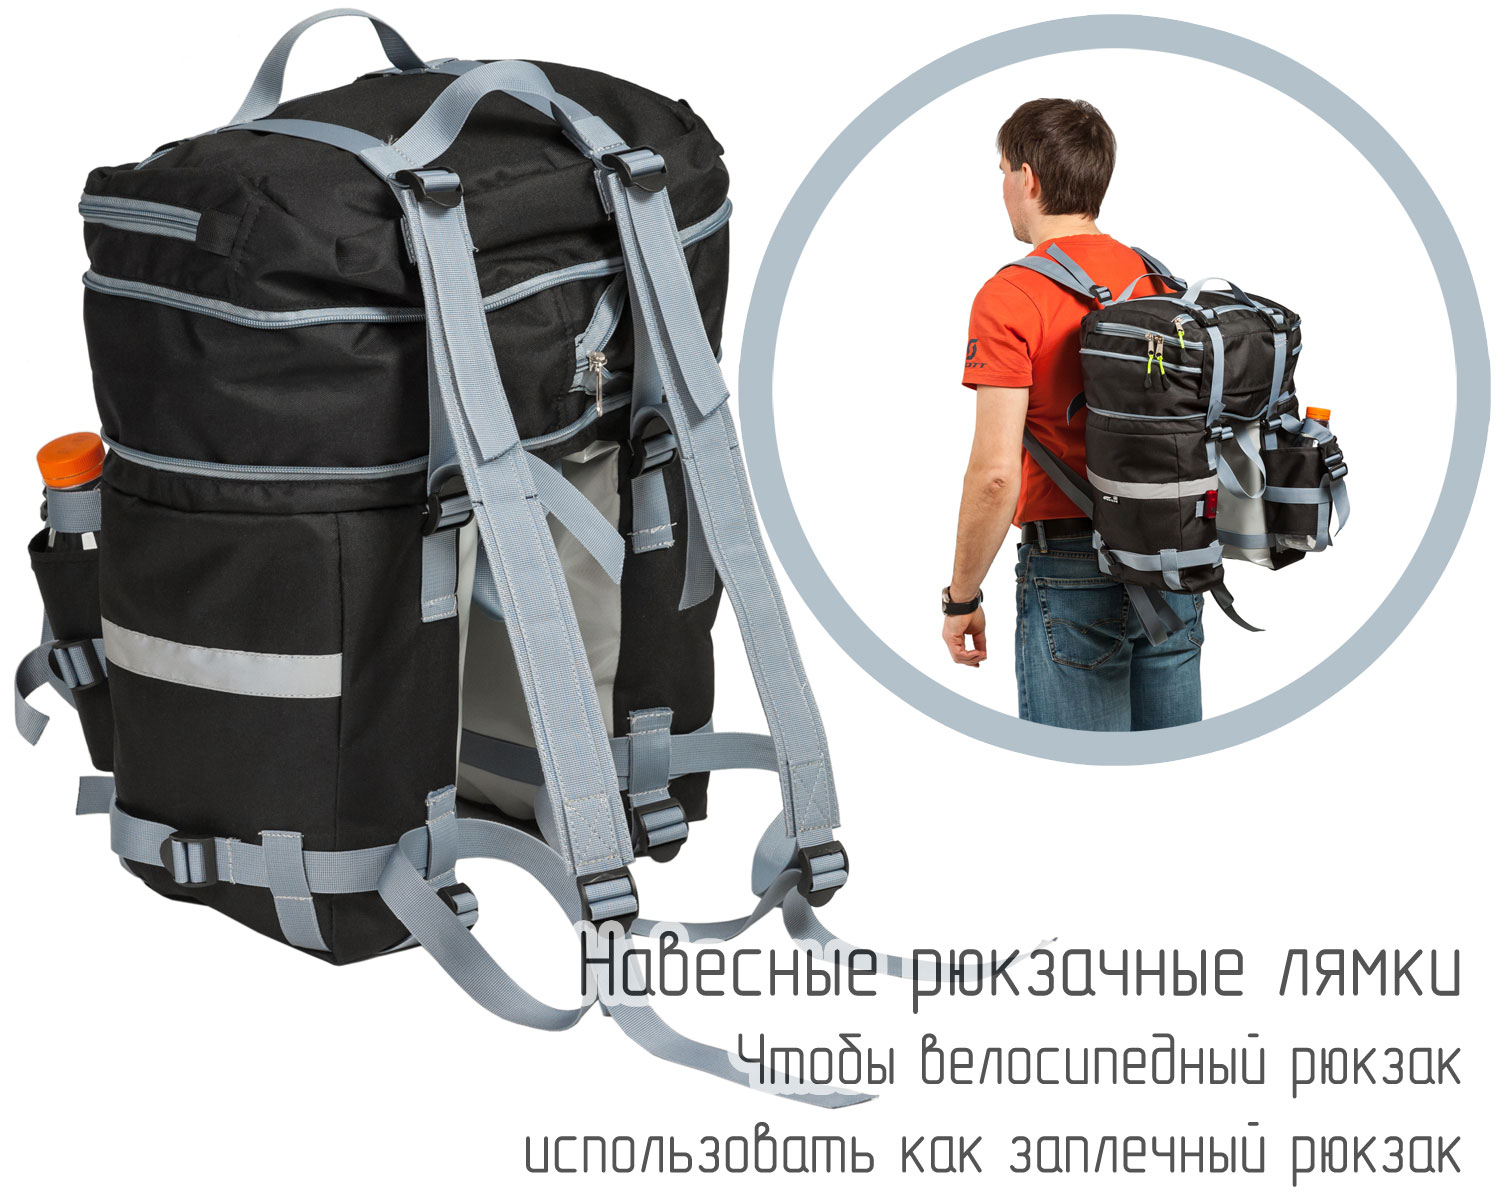 «Рюкзачные» лямки - чтобы велорюкзак использовать, как обычный заплечный рюкзак